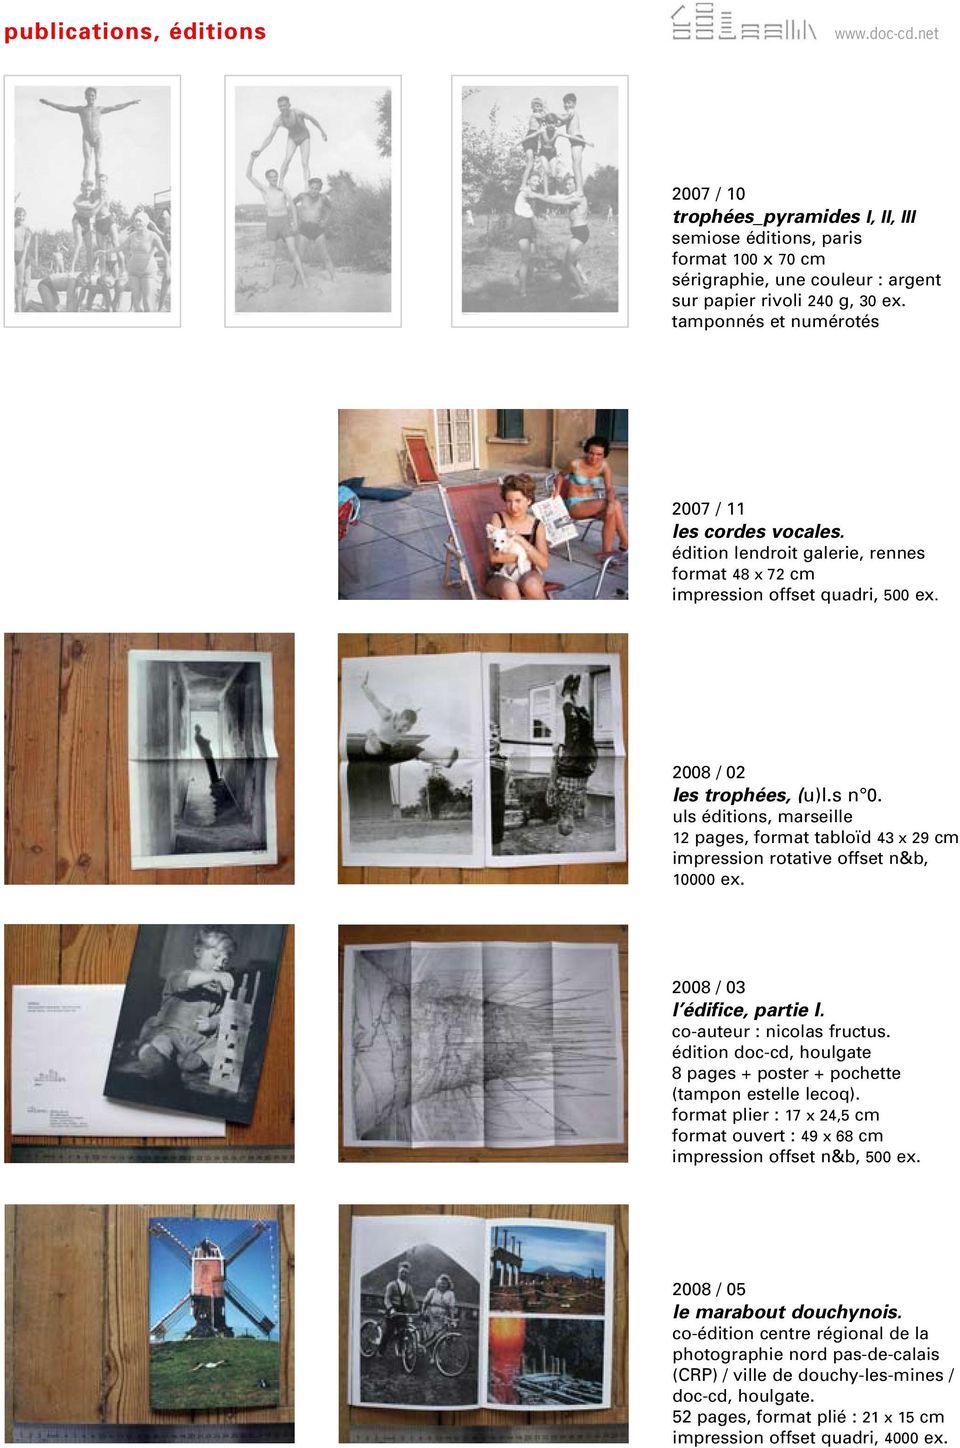 uls éditions, marseille 12 pages, format tabloïd 43 x 29 cm impression rotative offset n&b, 10000 ex. 2008 / 03 l édifice, partie I. co-auteur : nicolas fructus.